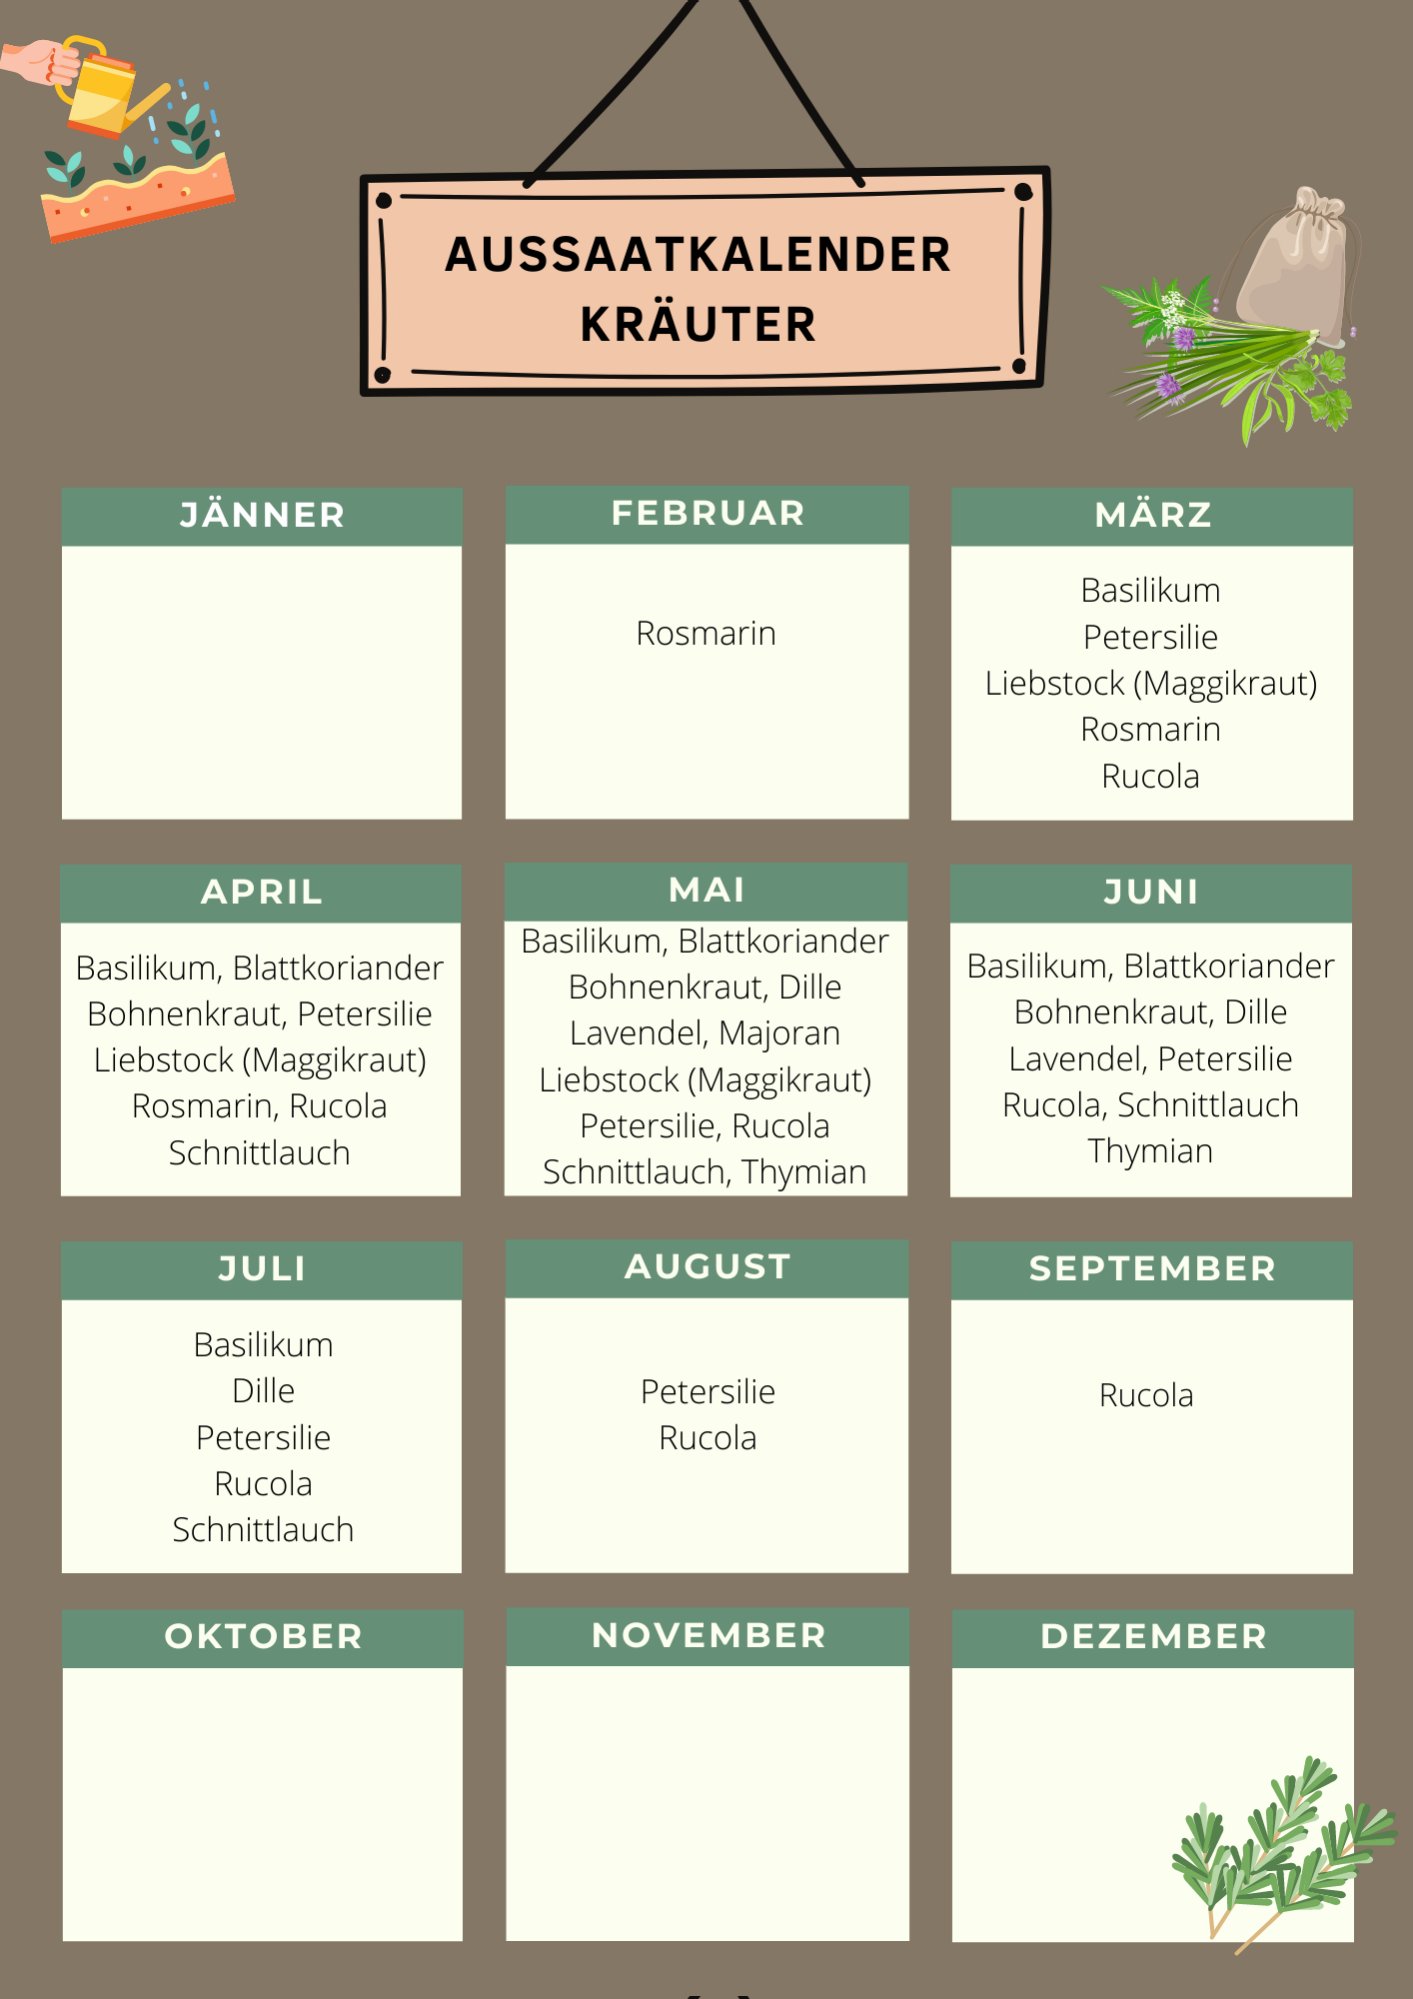 Aussaatkalender Kräuter